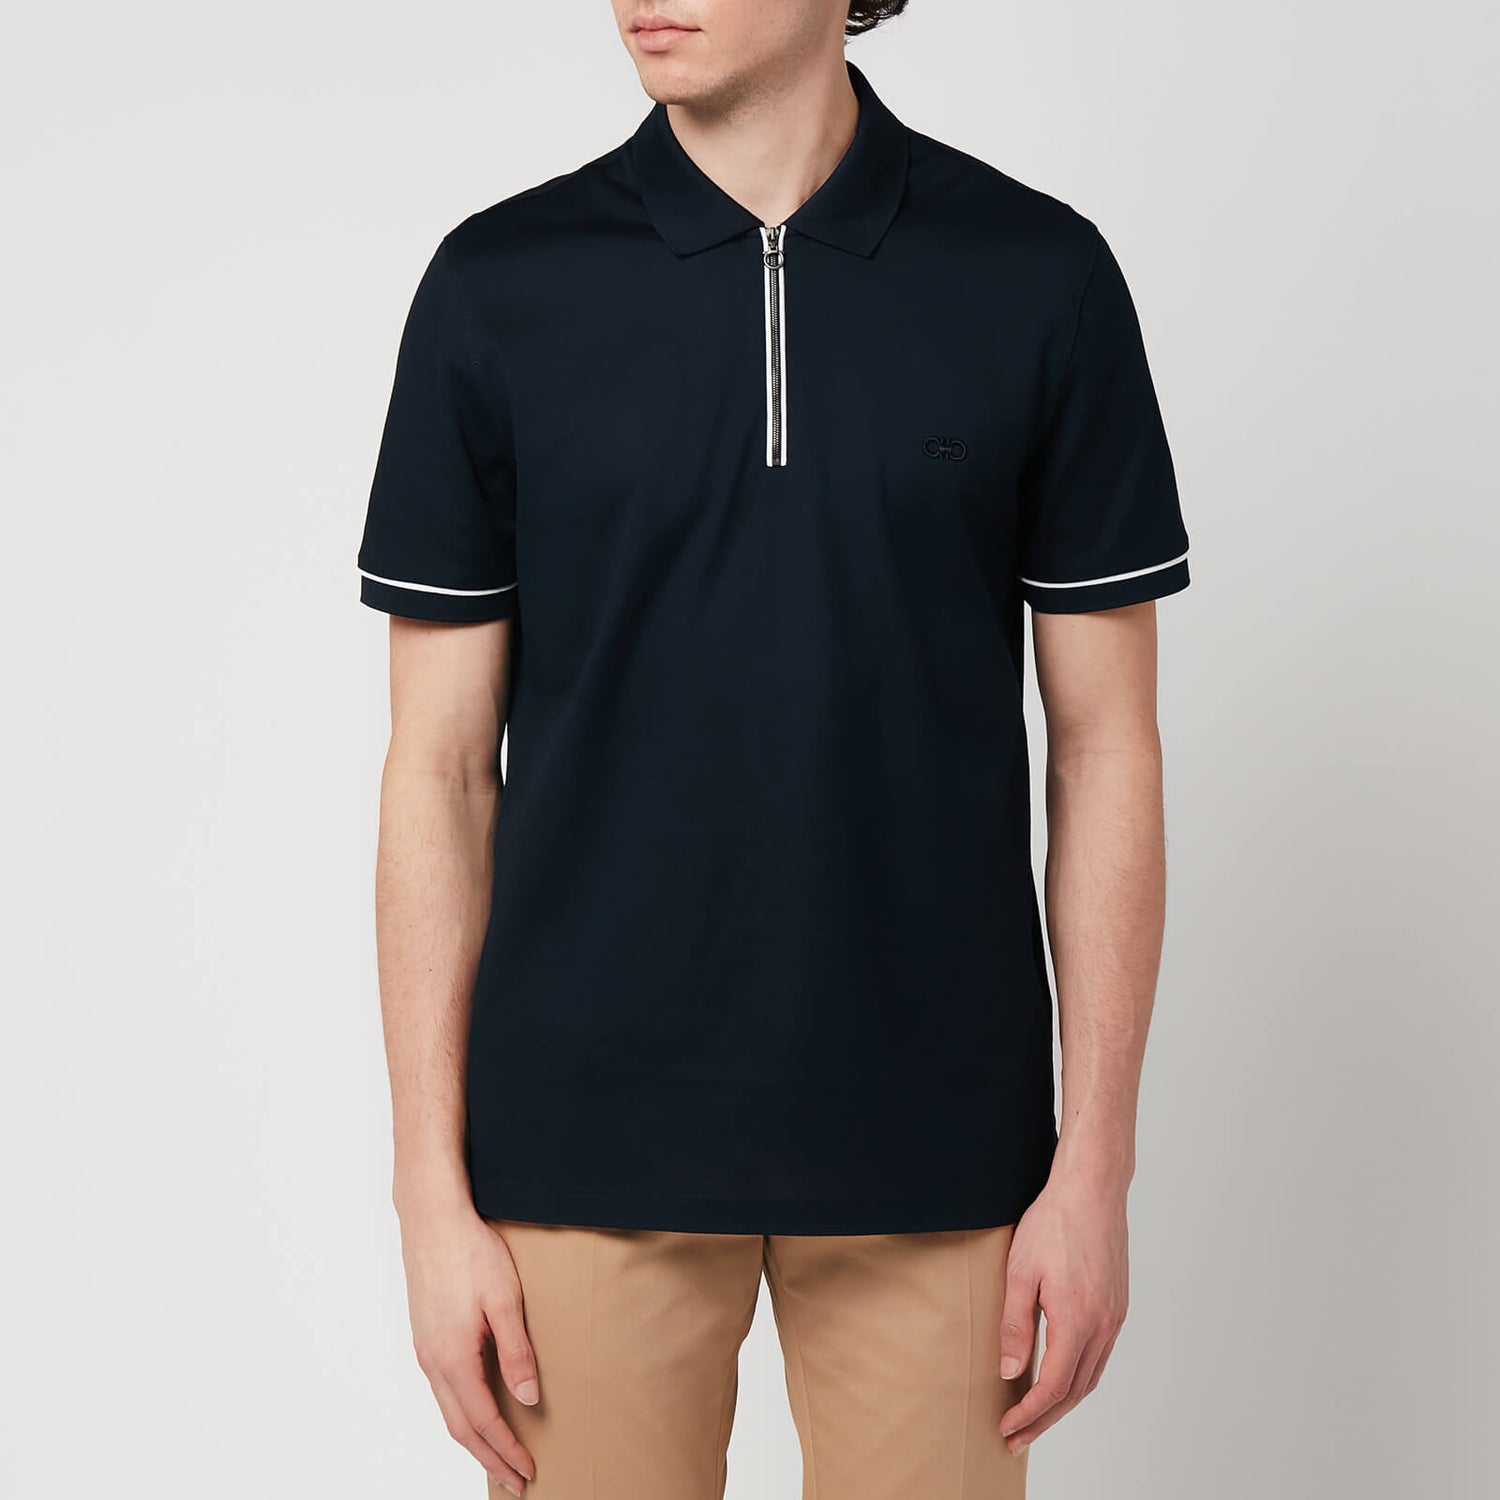 Salvatore Ferragamo Men's Half Zip Polo Shirt - Navy - S